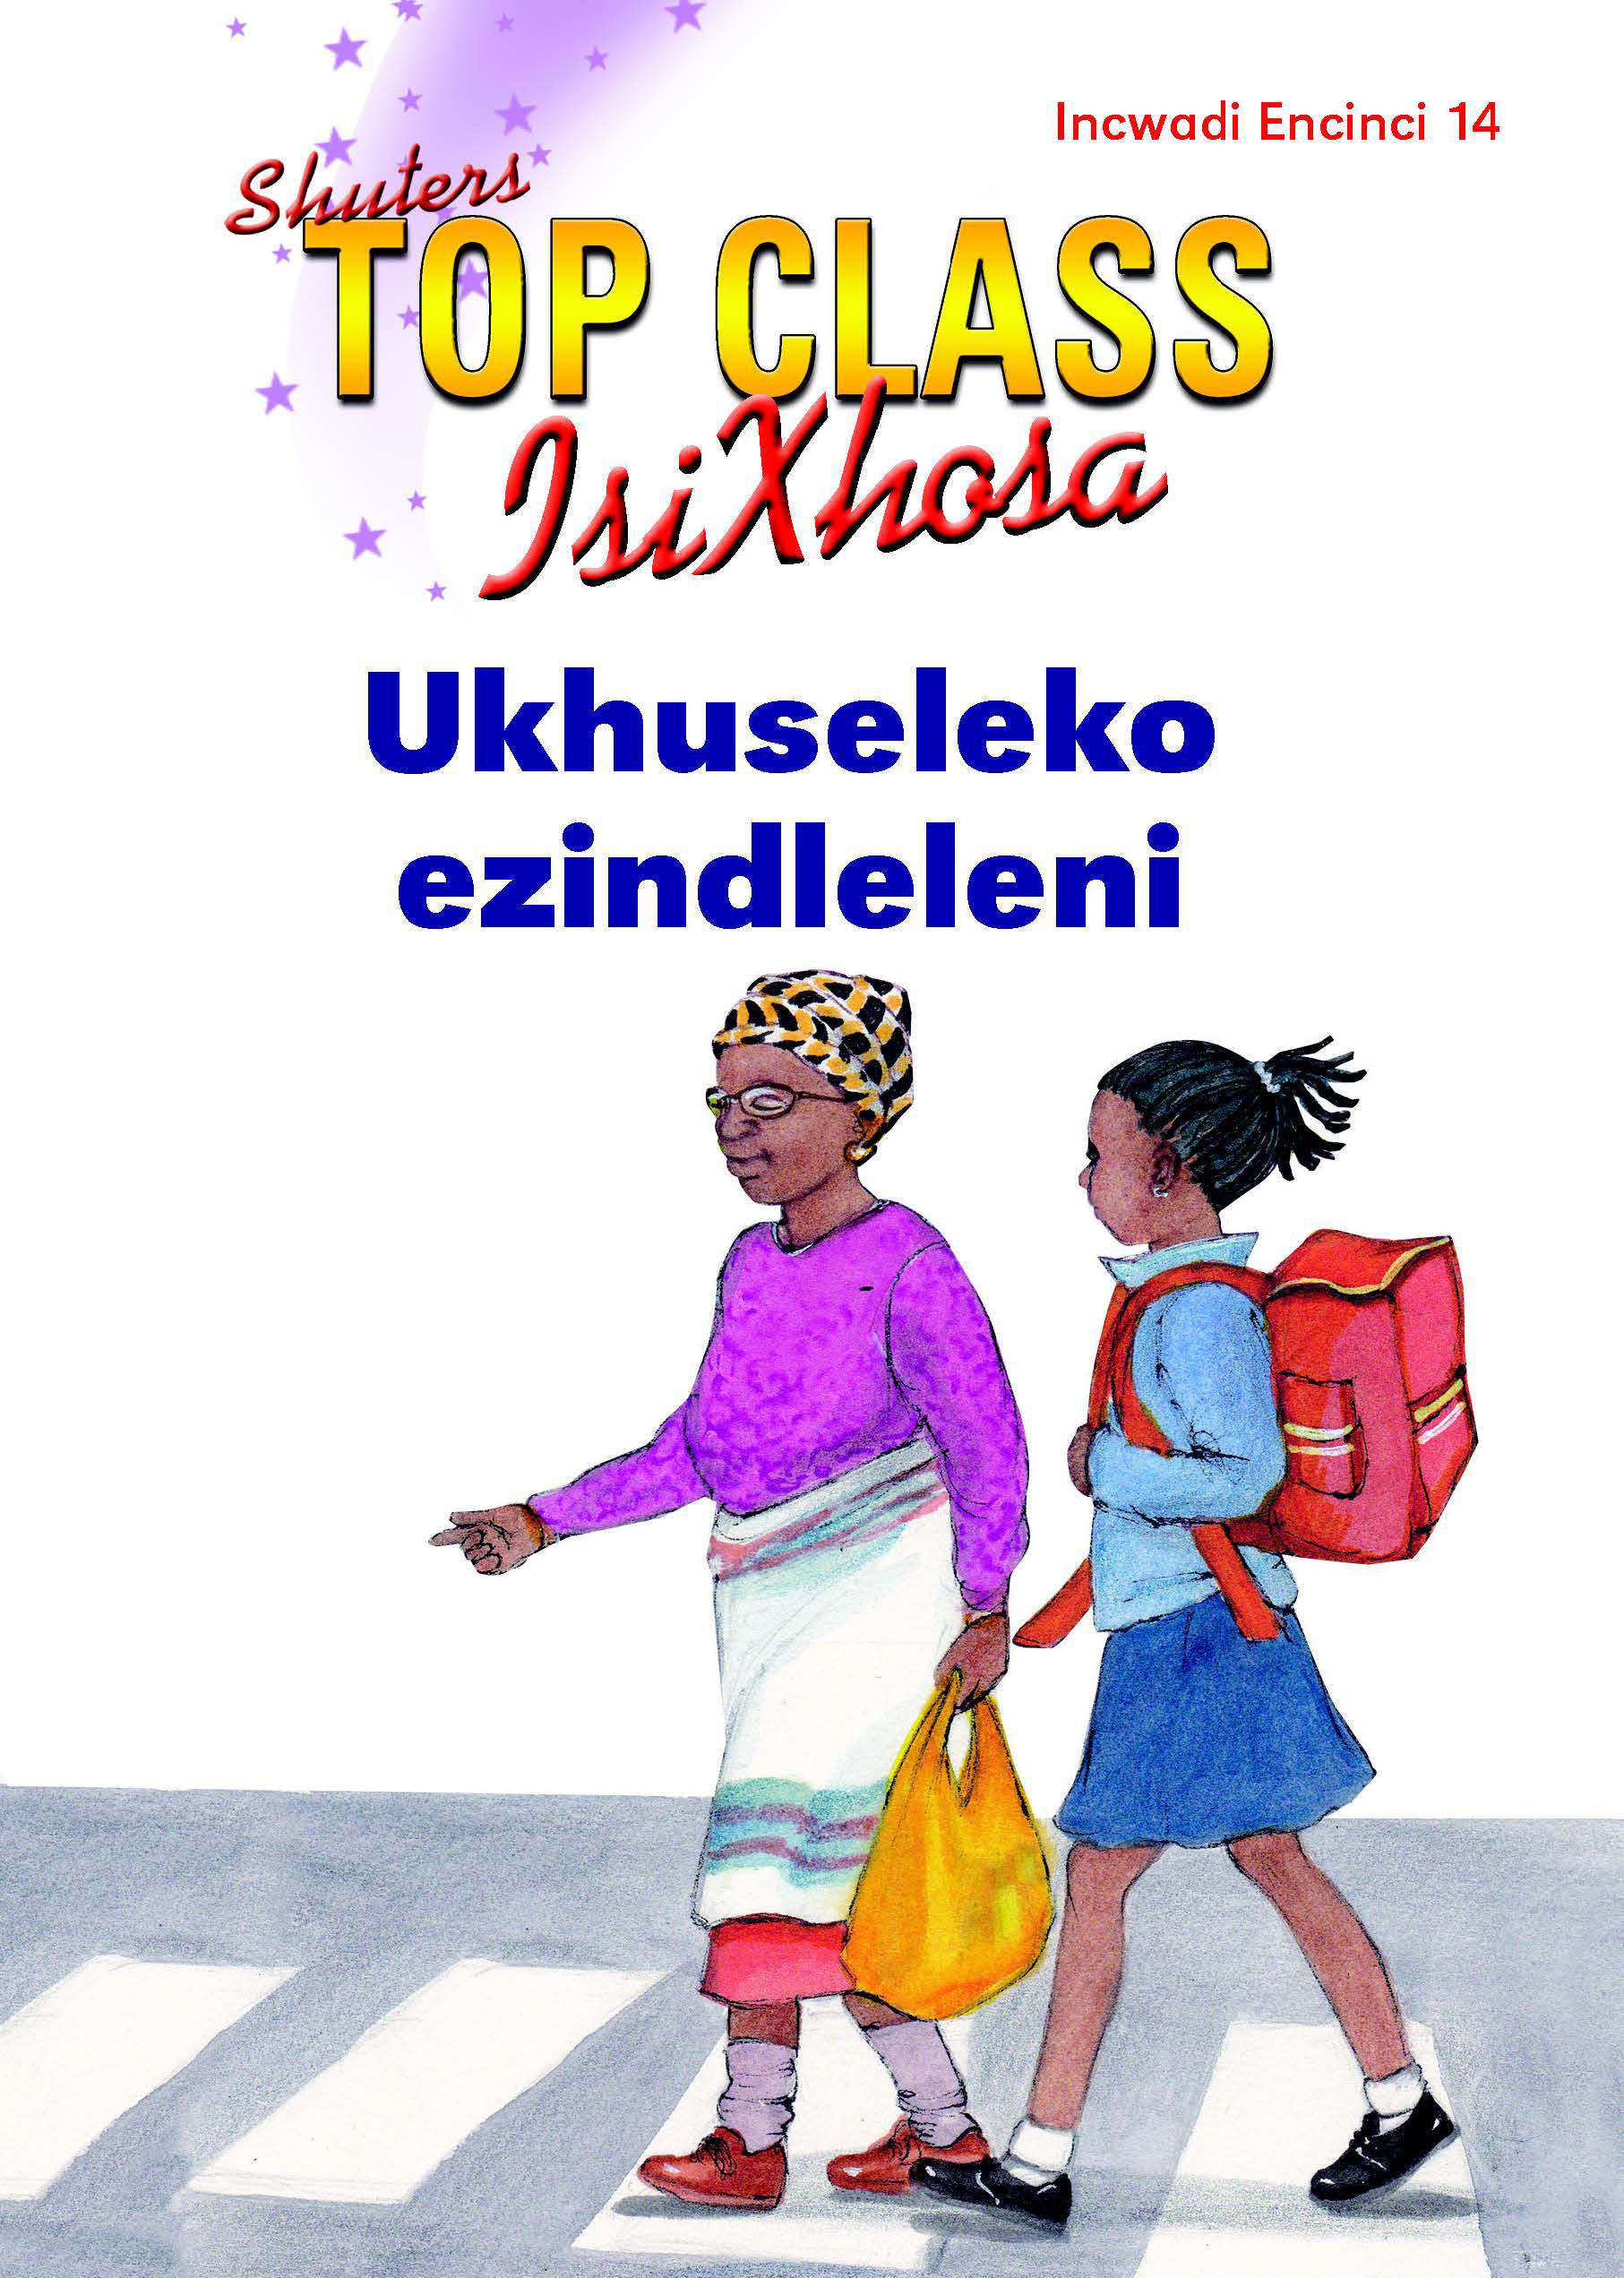 TOP CLASS ISIXHOSA FAL GRADE 2 READER 14: UKHUSELEKO EZINDLELENI Cover